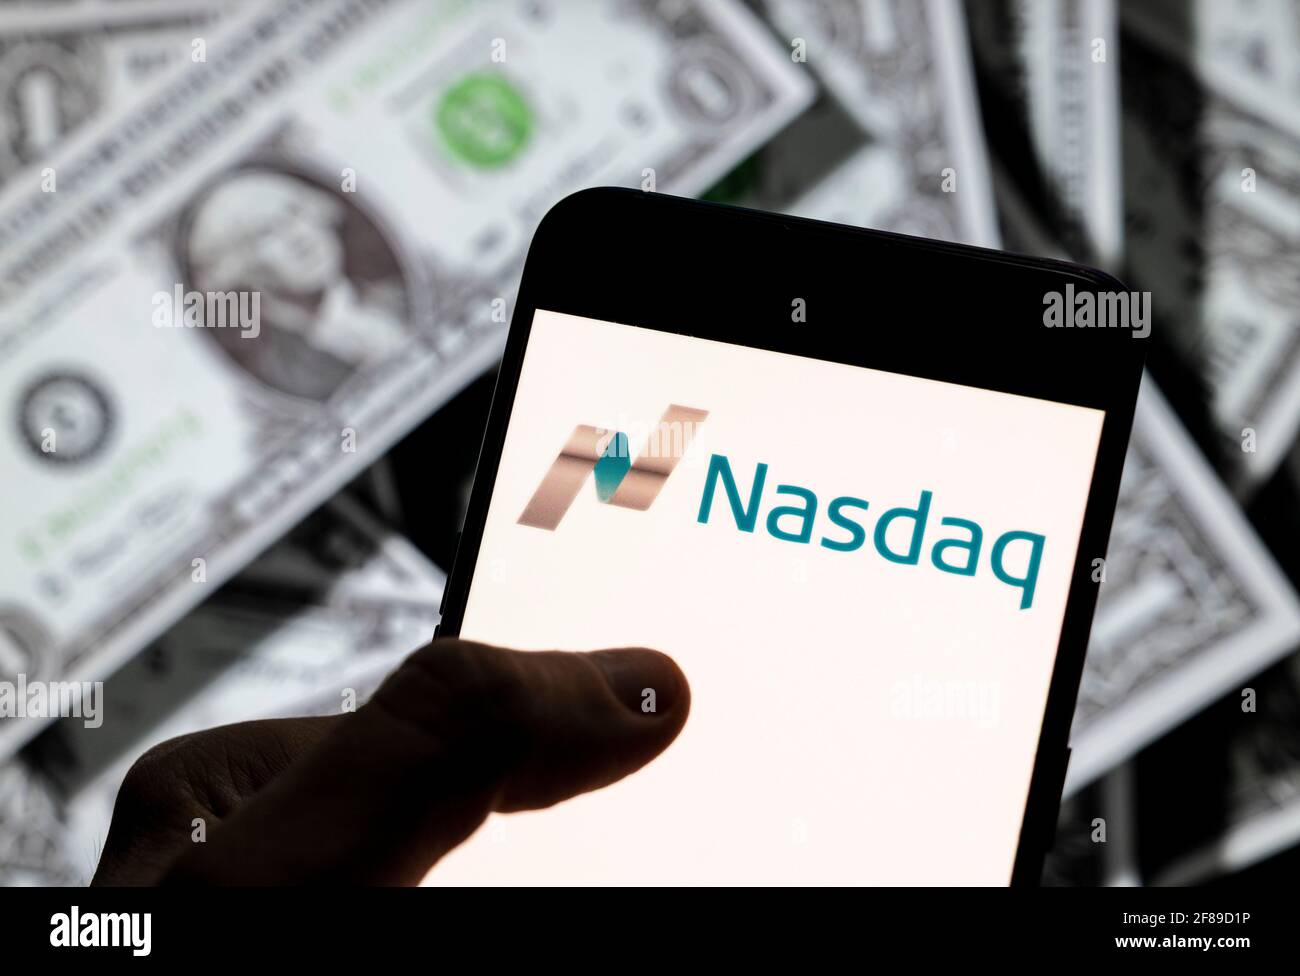 Dans cette illustration, l'indice de la bourse américaine, le logo Nasdaq vu sur un écran d'appareil mobile Android avec la devise de l'icône dollar des États-Unis, symbole de l'icône $ en arrière-plan. Banque D'Images